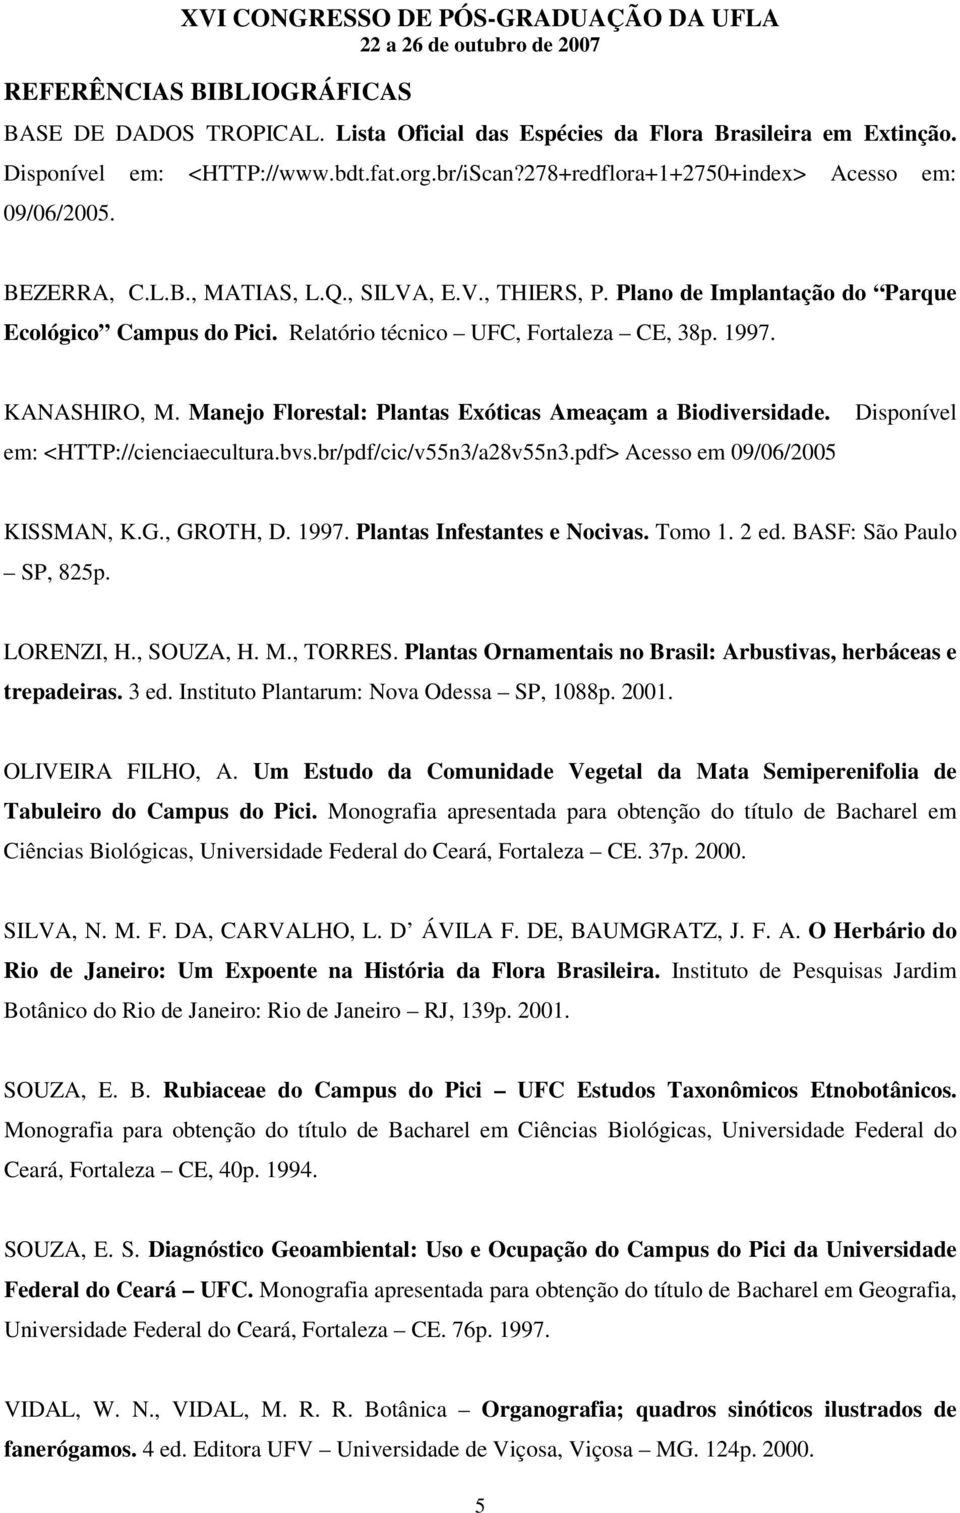 Relatório técnico UFC, Fortaleza CE, 38p. 1997. KANASHIRO, M. Manejo Florestal: Plantas Exóticas Ameaçam a Biodiversidade. em: <HTTP://cienciaecultura.bvs.br/pdf/cic/v55n3/a28v55n3.